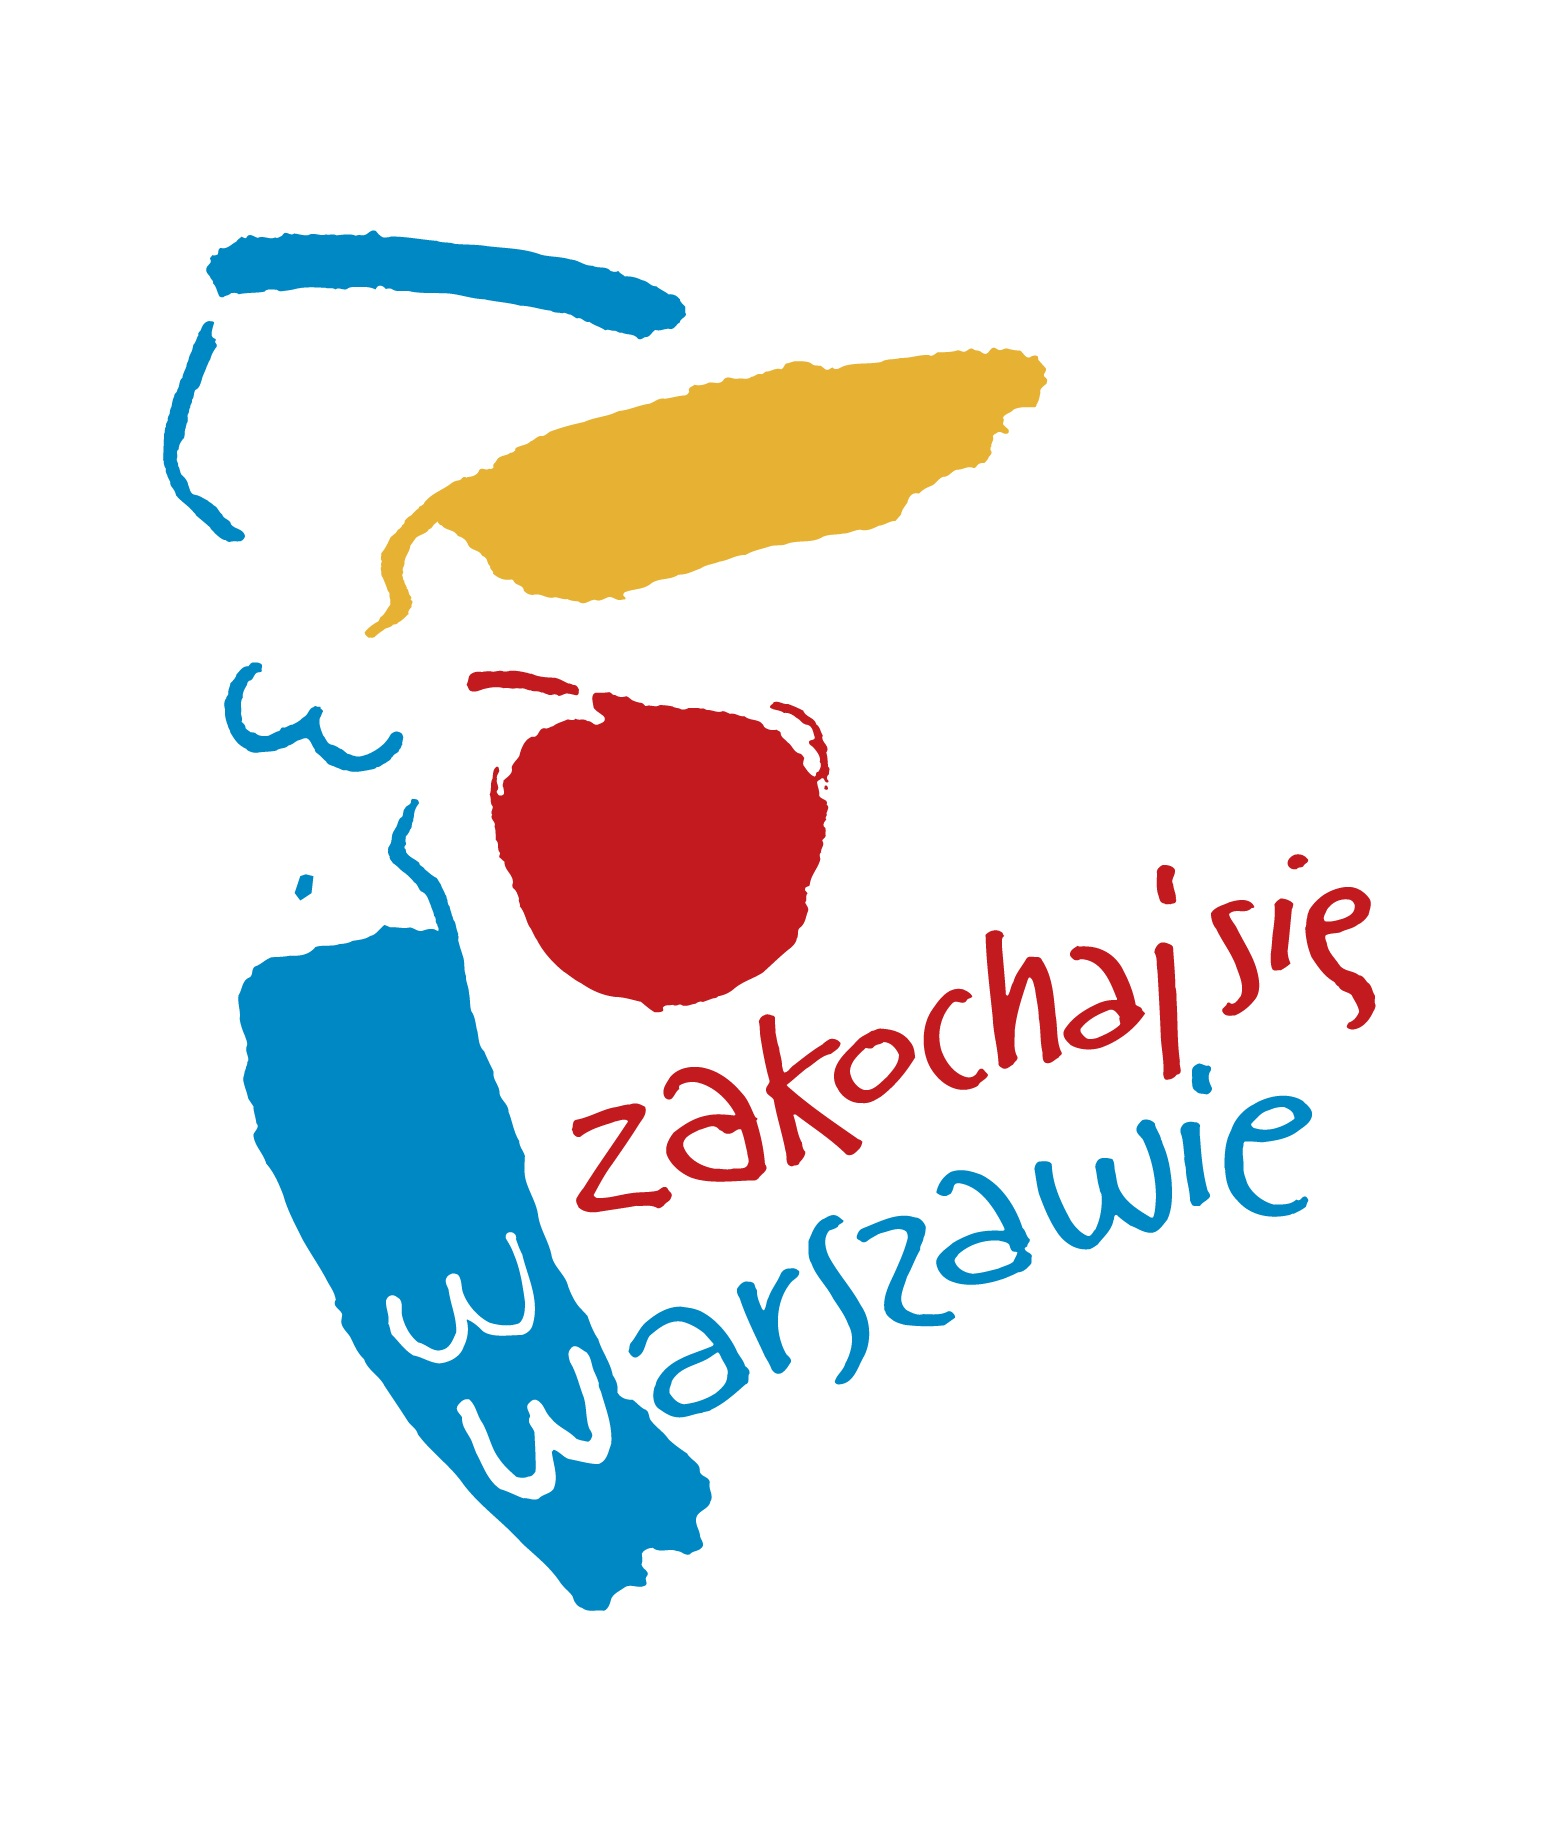 Projekt pod patronatem Urzędu Miasta Stołecznego Warszawa